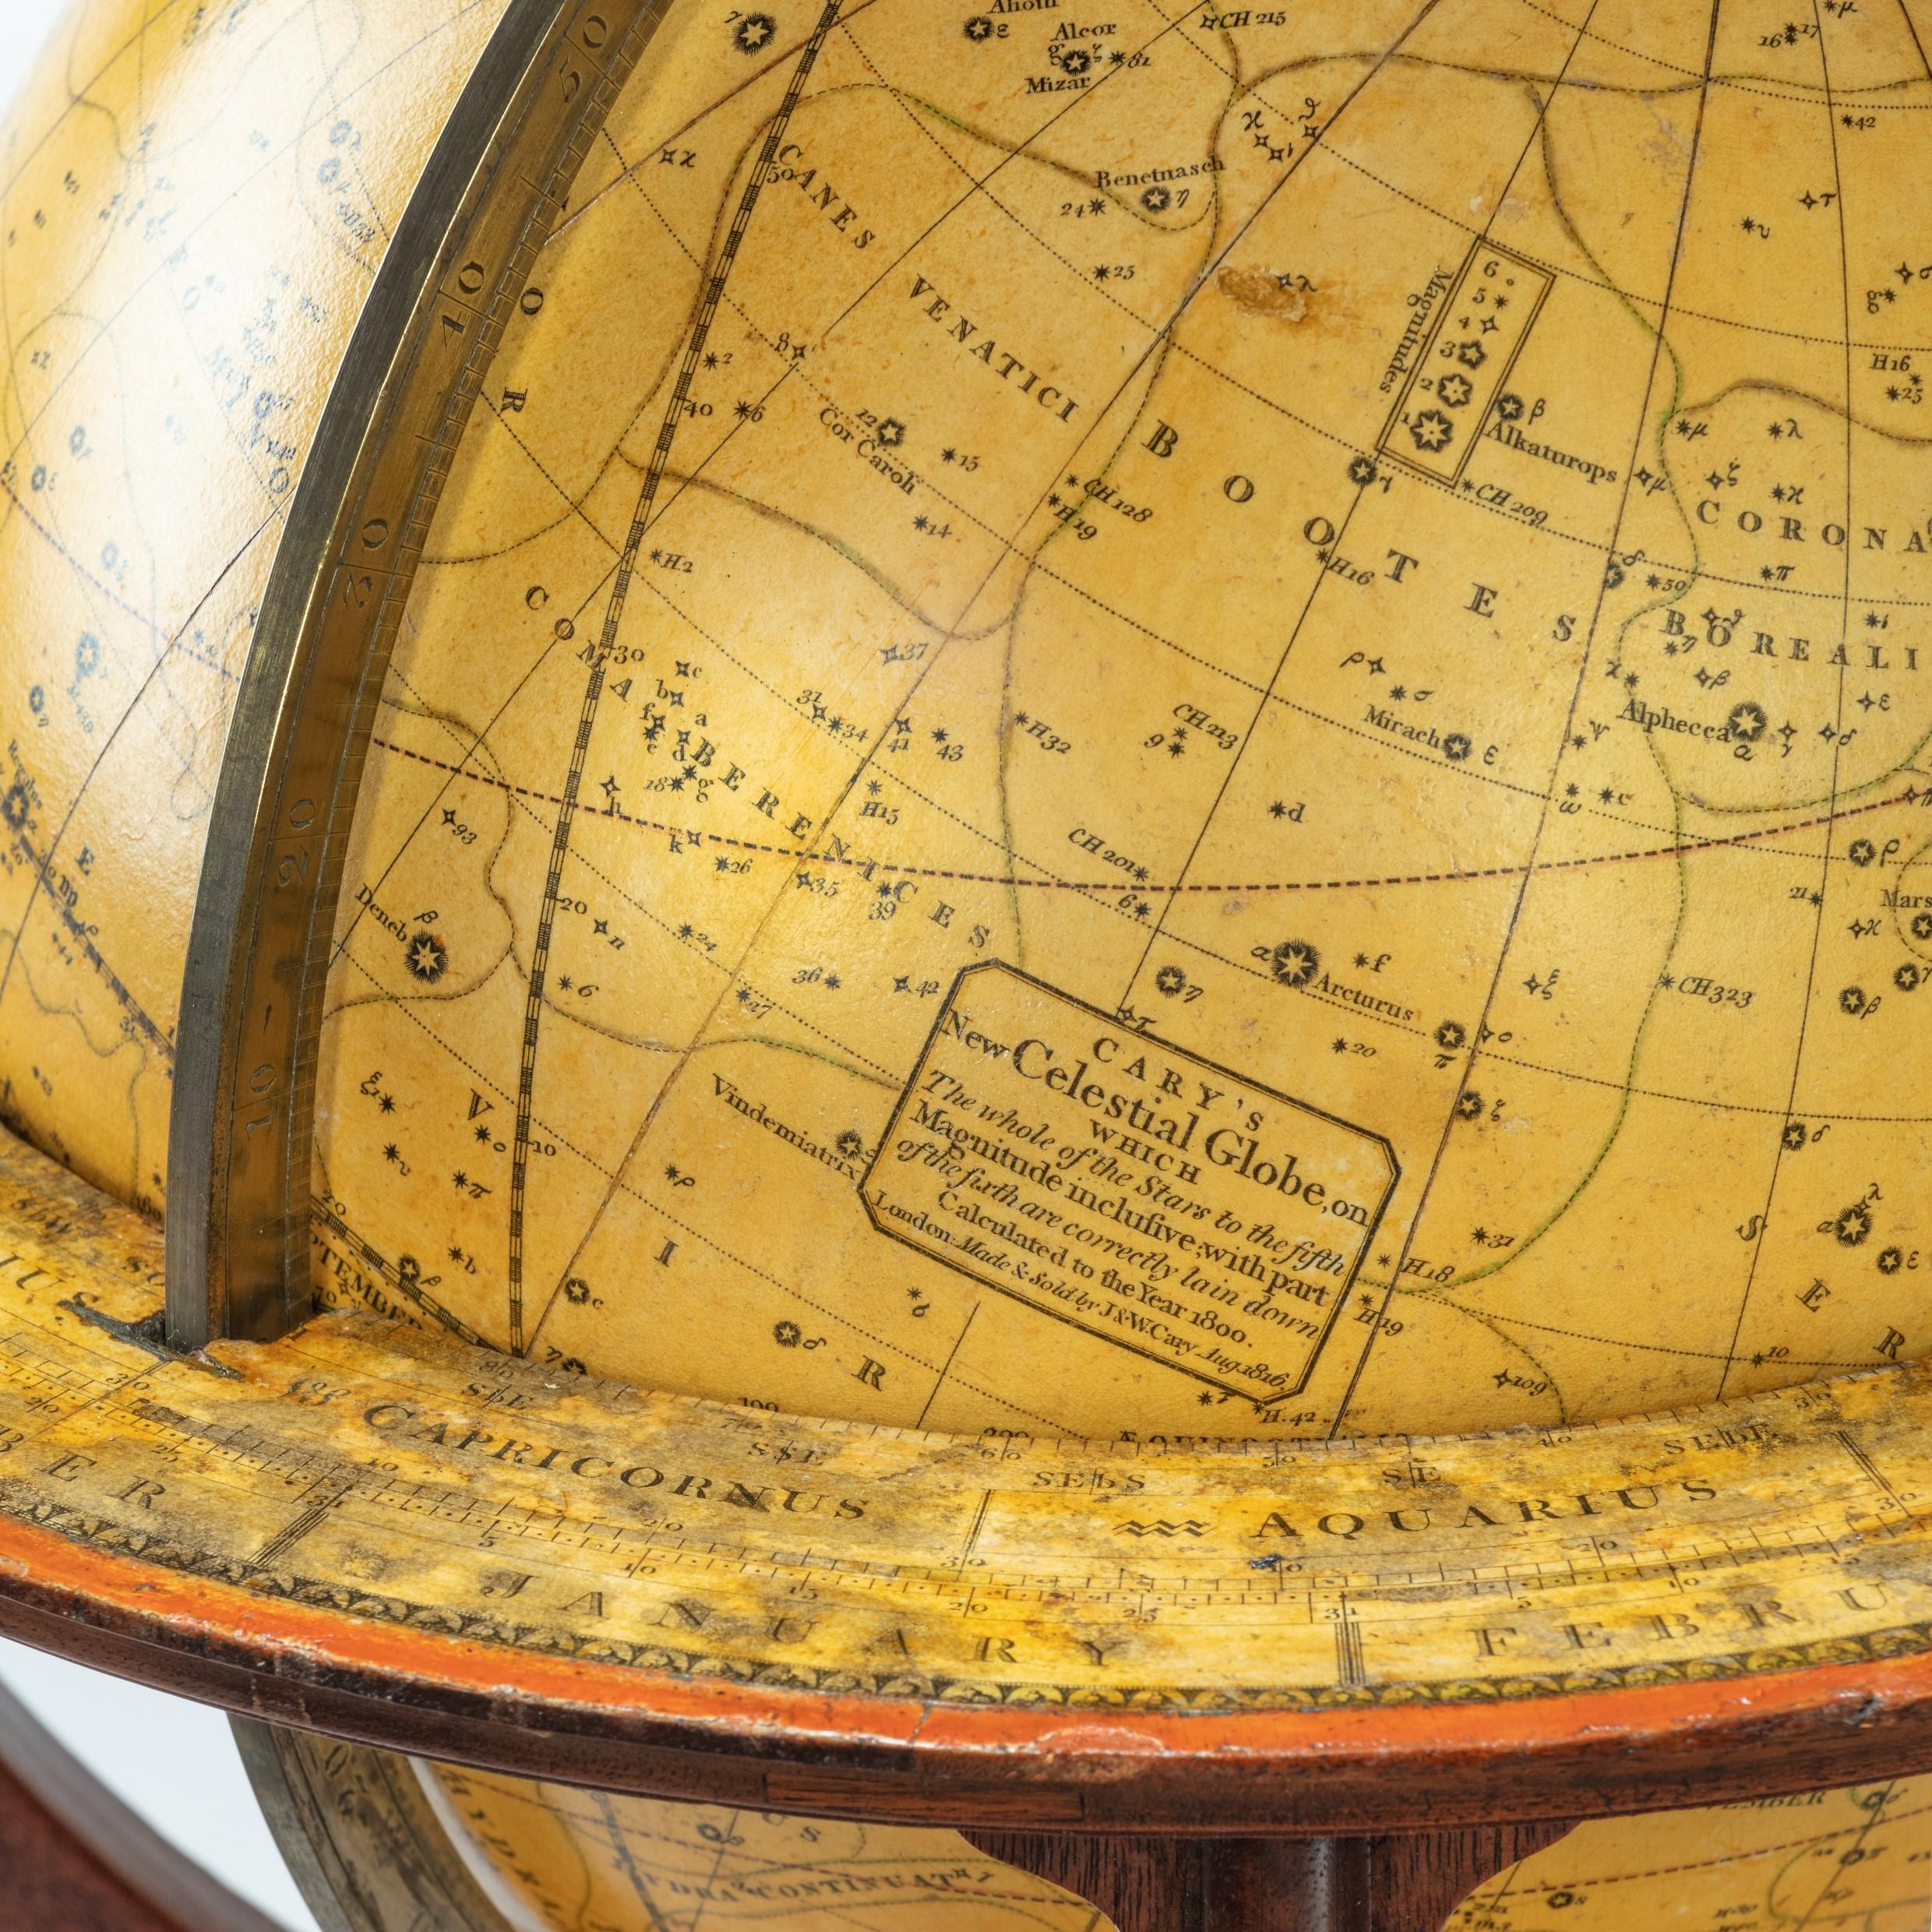 Une paire rare de globes de table de 9 pouces par Cary, chacun daté de 1816. Ces globes sont l'œuvre de John et William Cary et montrent les frontières géographiques et politiques établies à la suite du Congrès de Vienne. Chacune est surmontée d'un